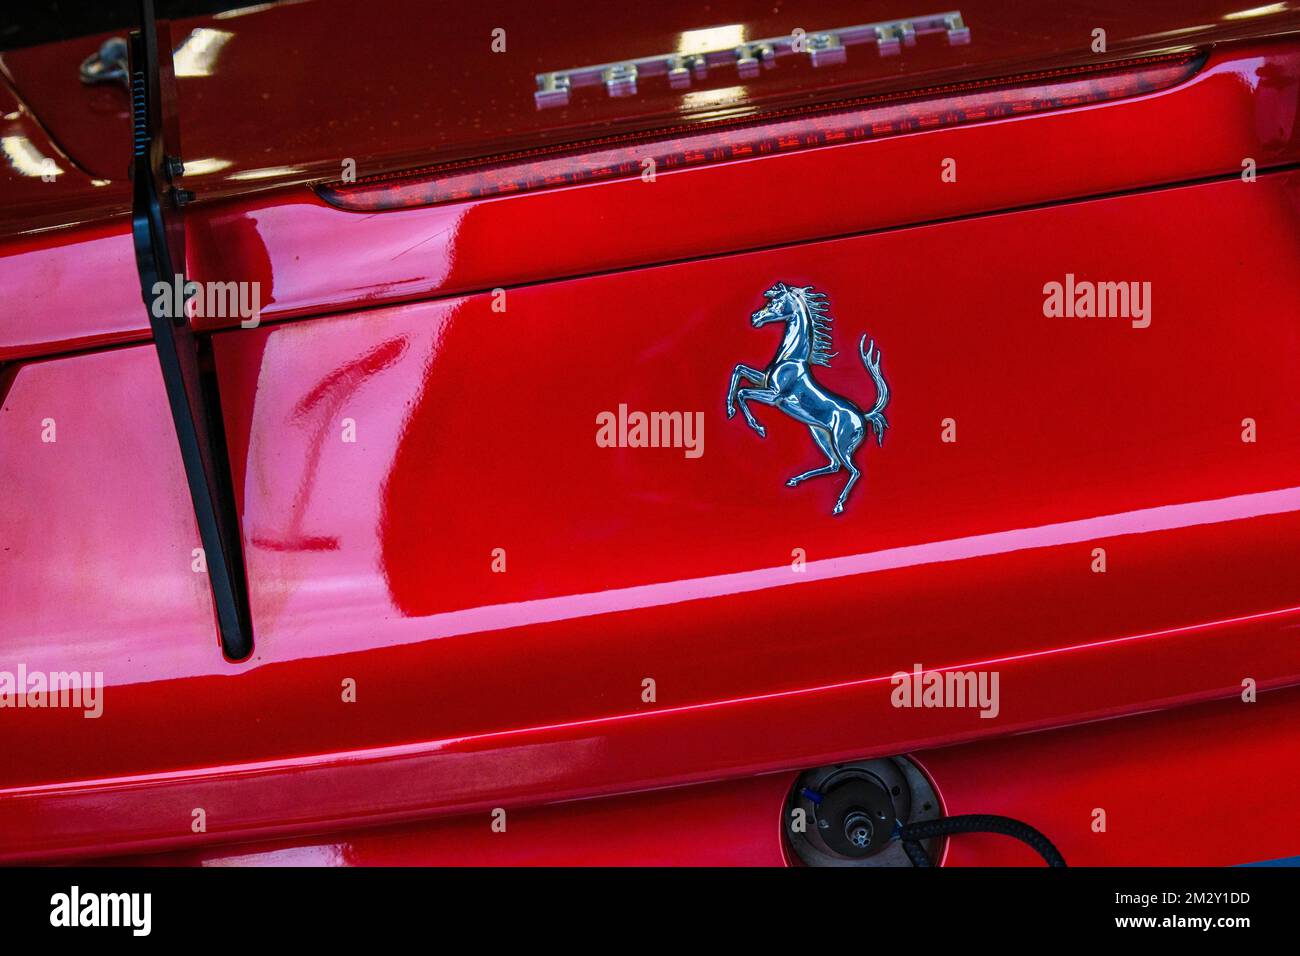 Ferrari-Emblem Logo Markenzeichen des Zuchtpferdes Cavallino Rampante auf der Rückseite des roten italienischen Sportwagens Ferrari 458 Challenge, Spa Francorchamps, Belgien Stockfoto